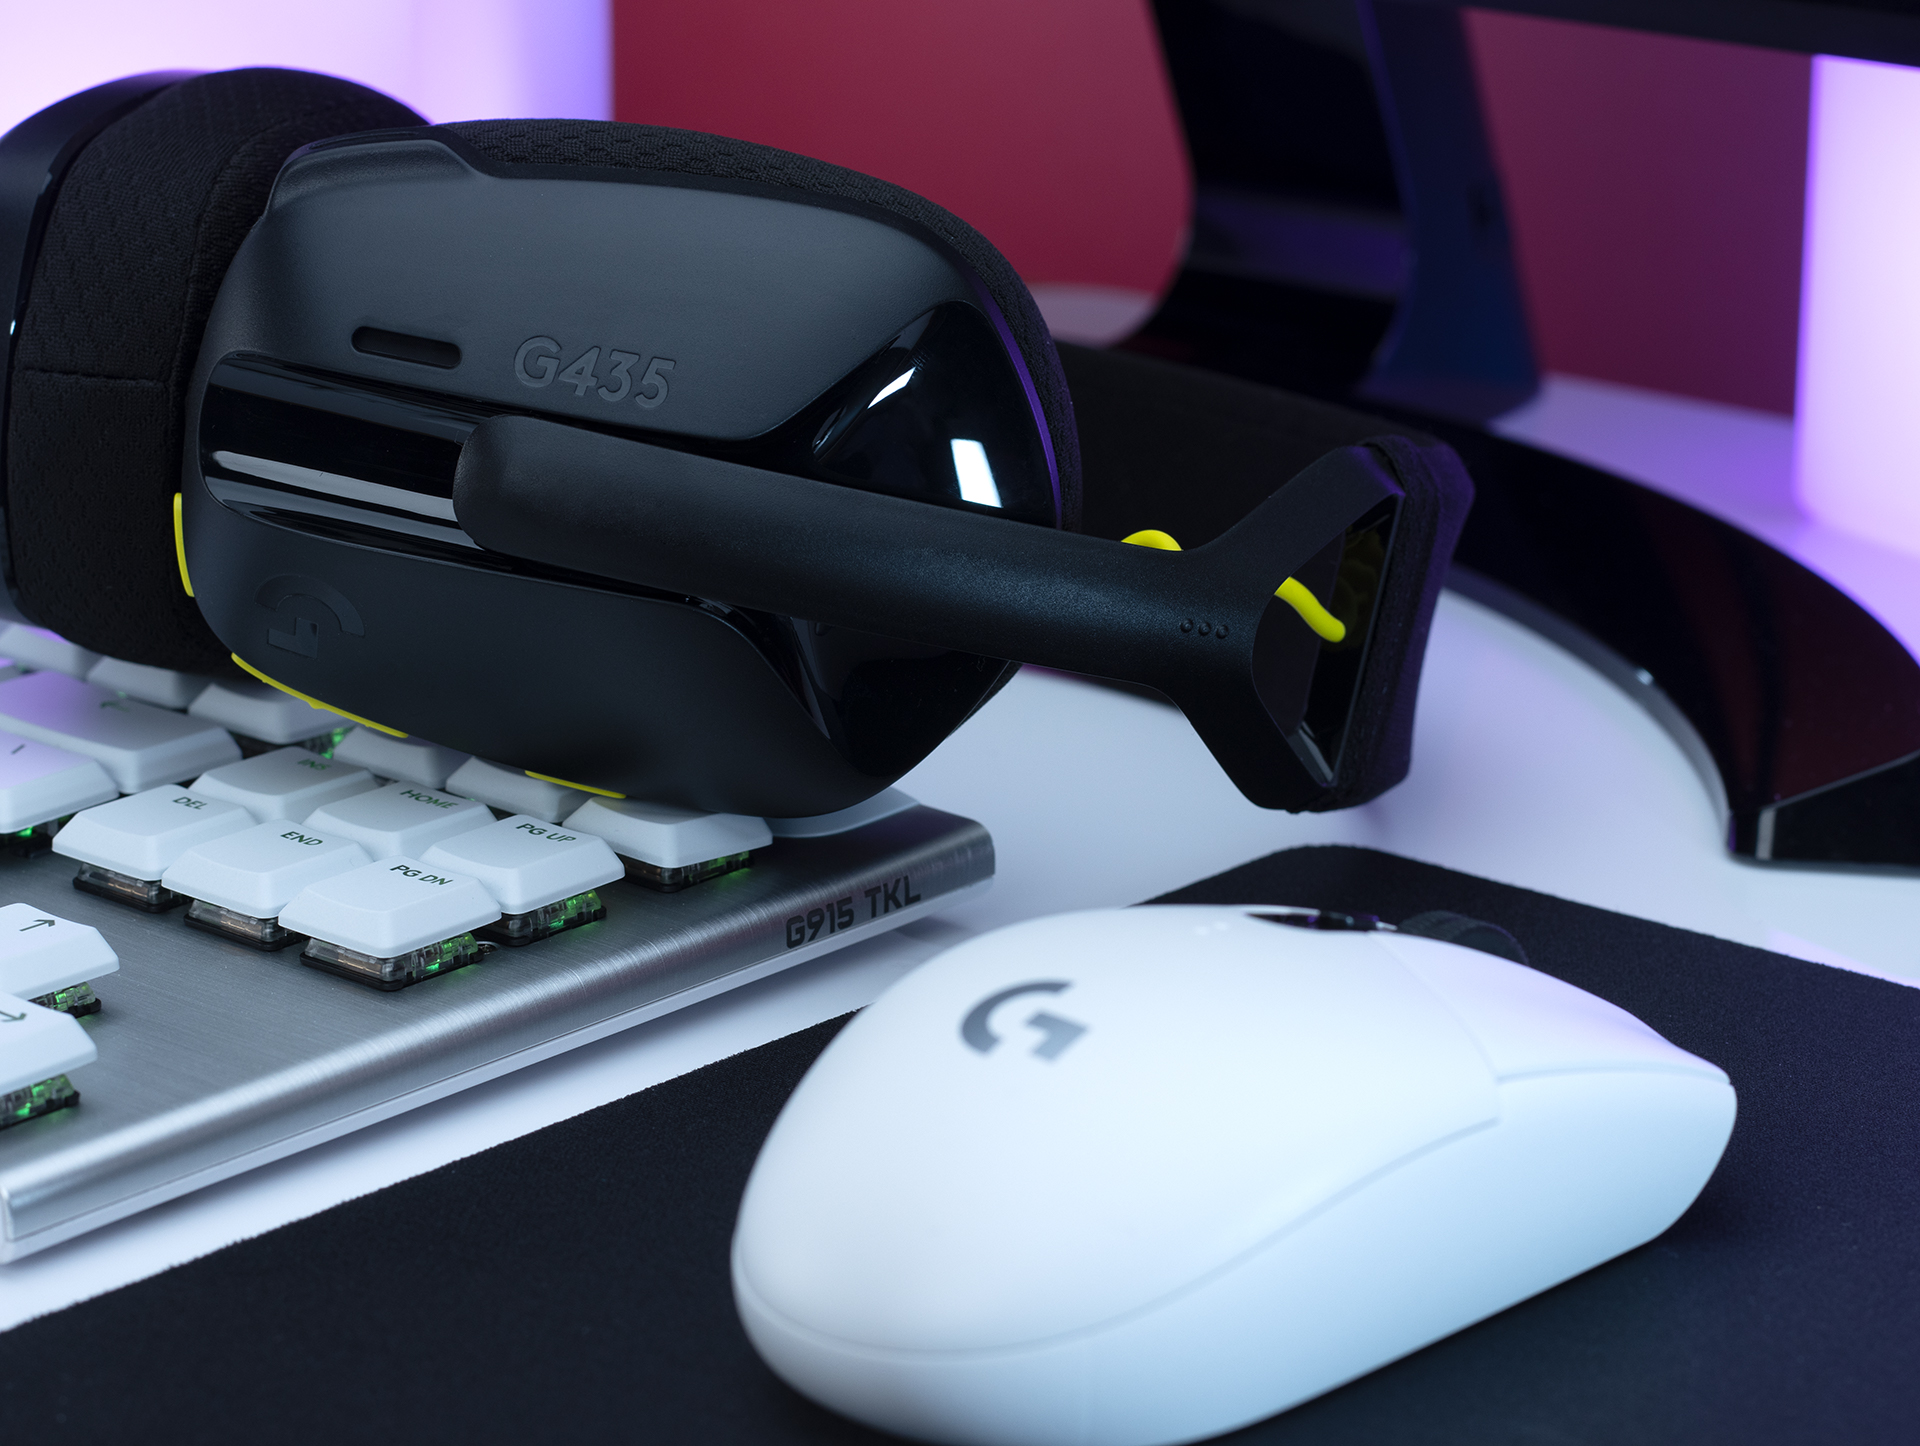  Logitech G305 LIGHTSPEED Wireless Gaming Mouse & G435